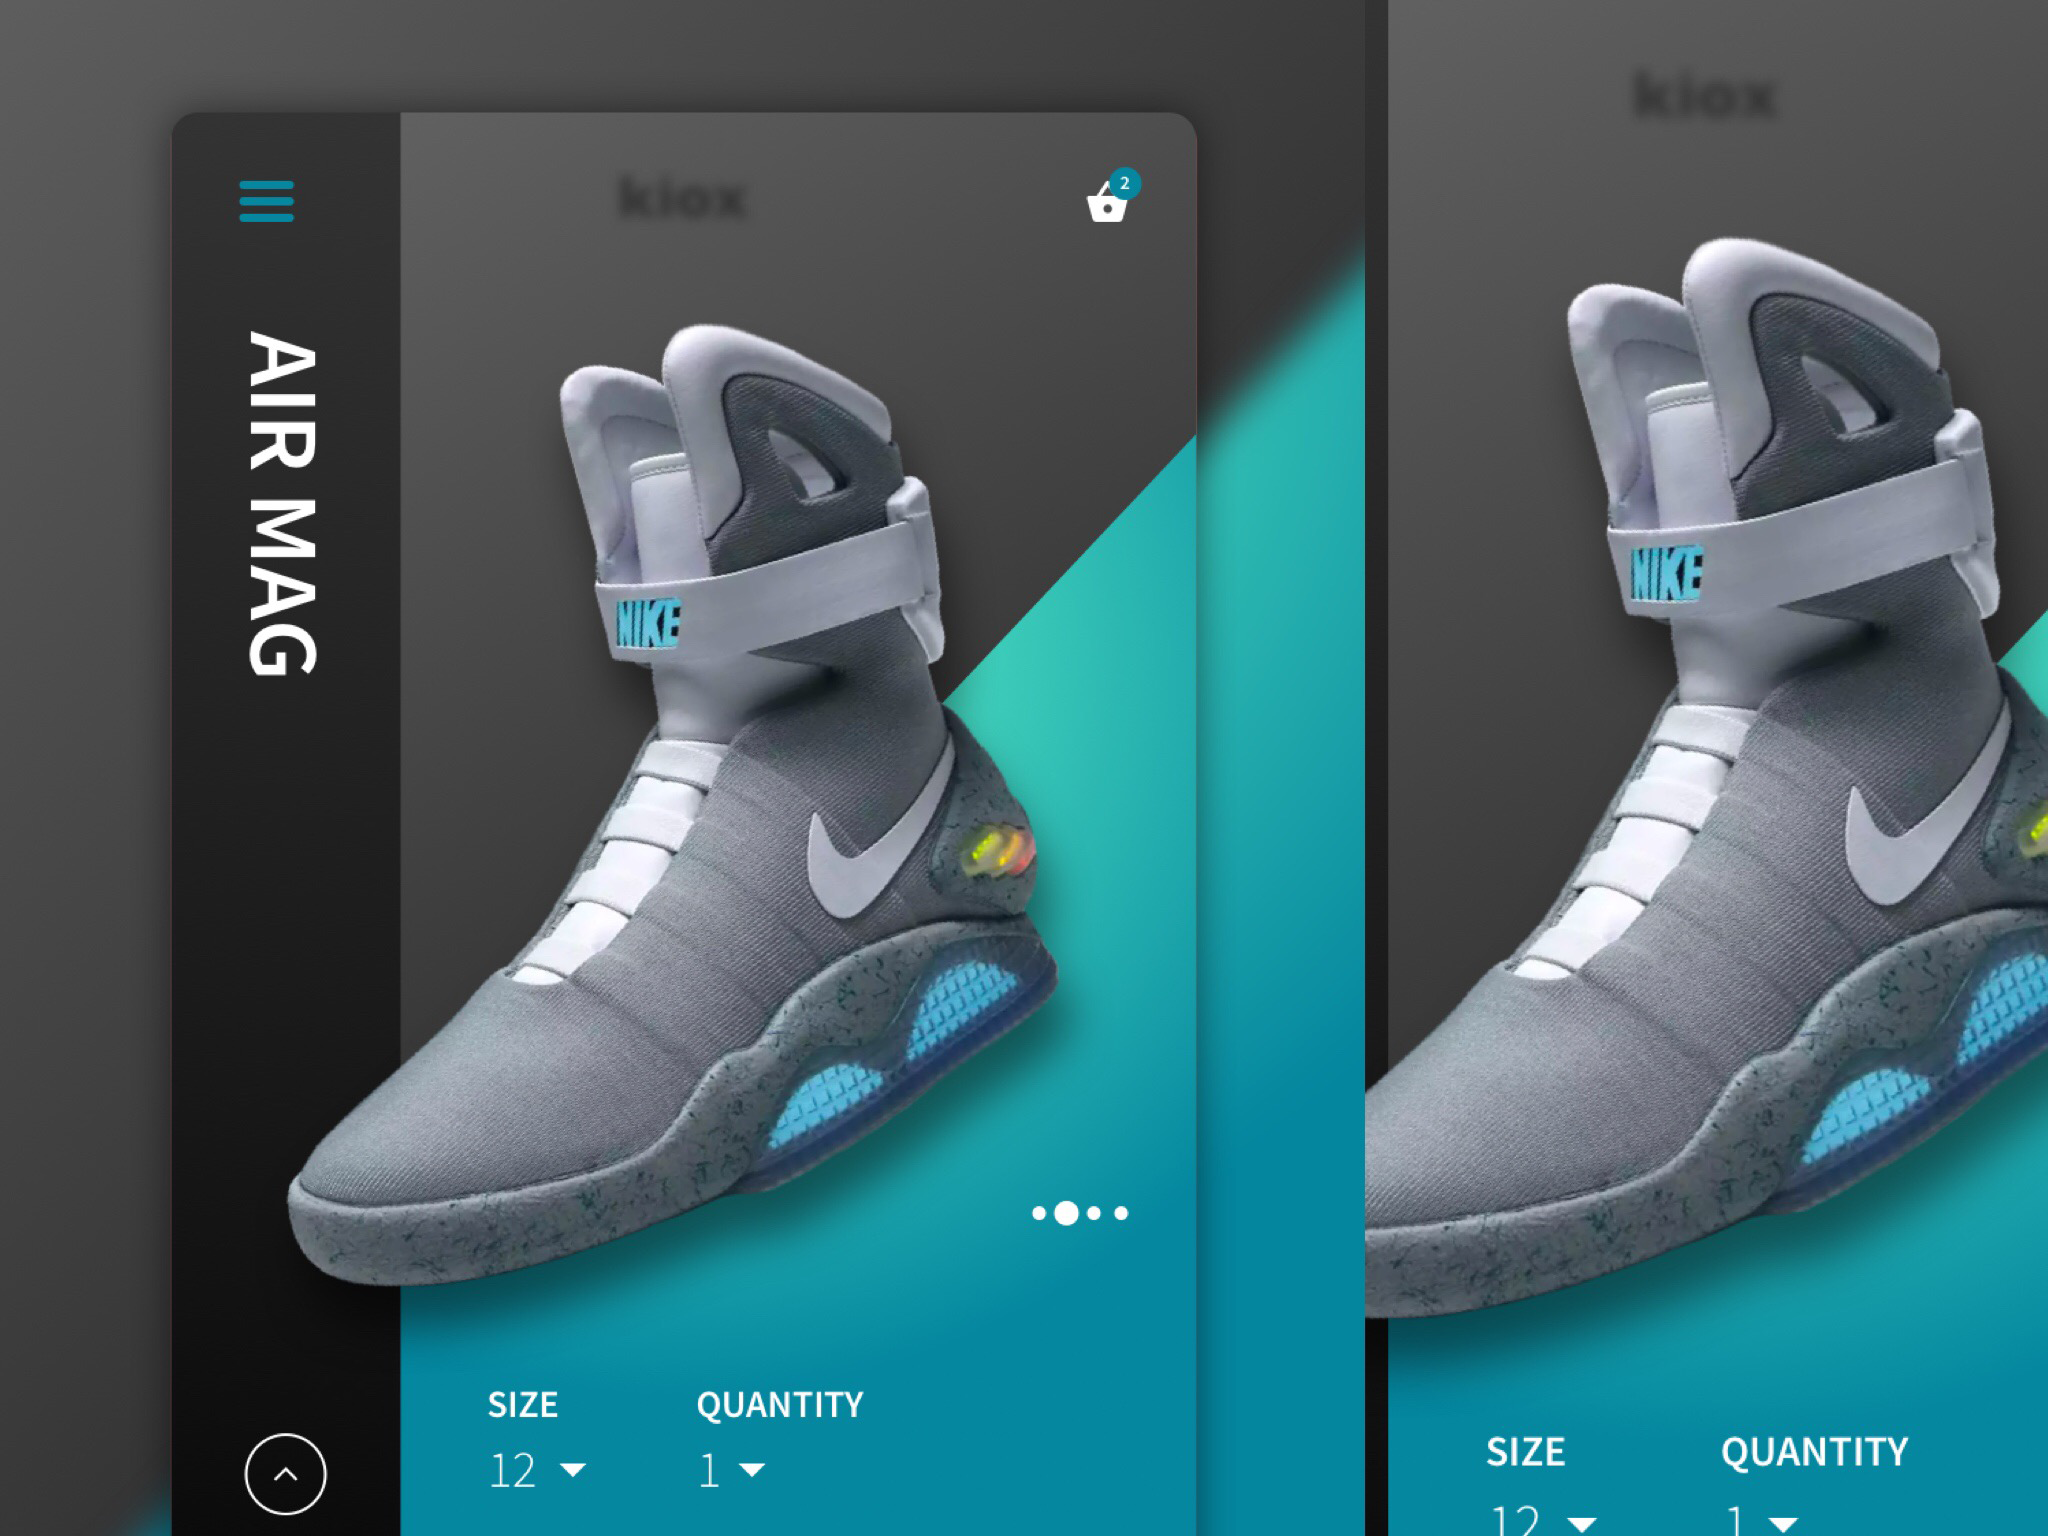 Instagram photo - Kiox - sneaker kiosk concept project, mobile version